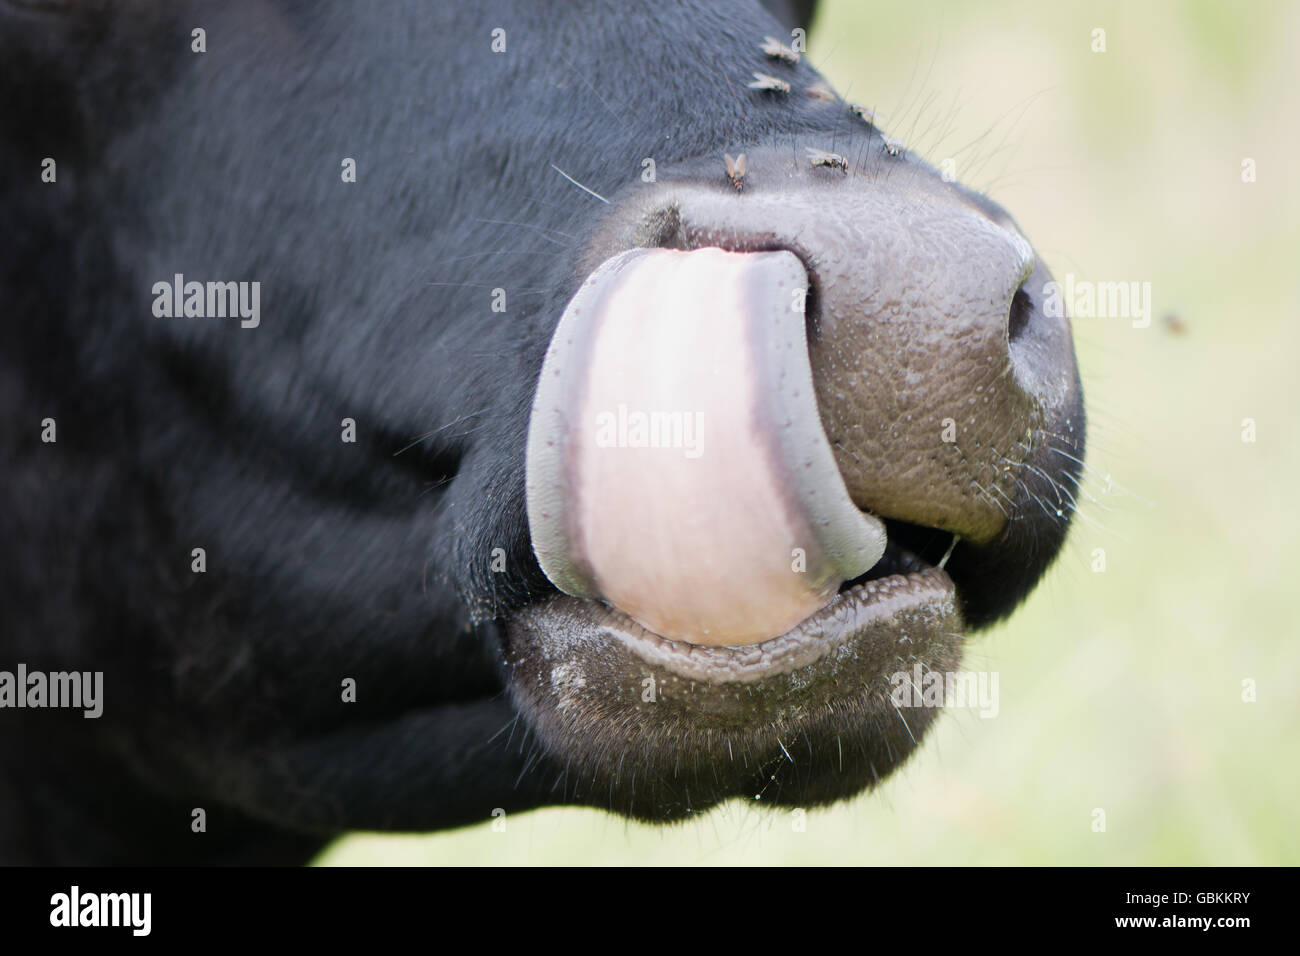 Vacca aletta di incollaggio fino al naso. Un animale che lambisce la sua narice, con mosche seduta sul suo naso umido Foto Stock